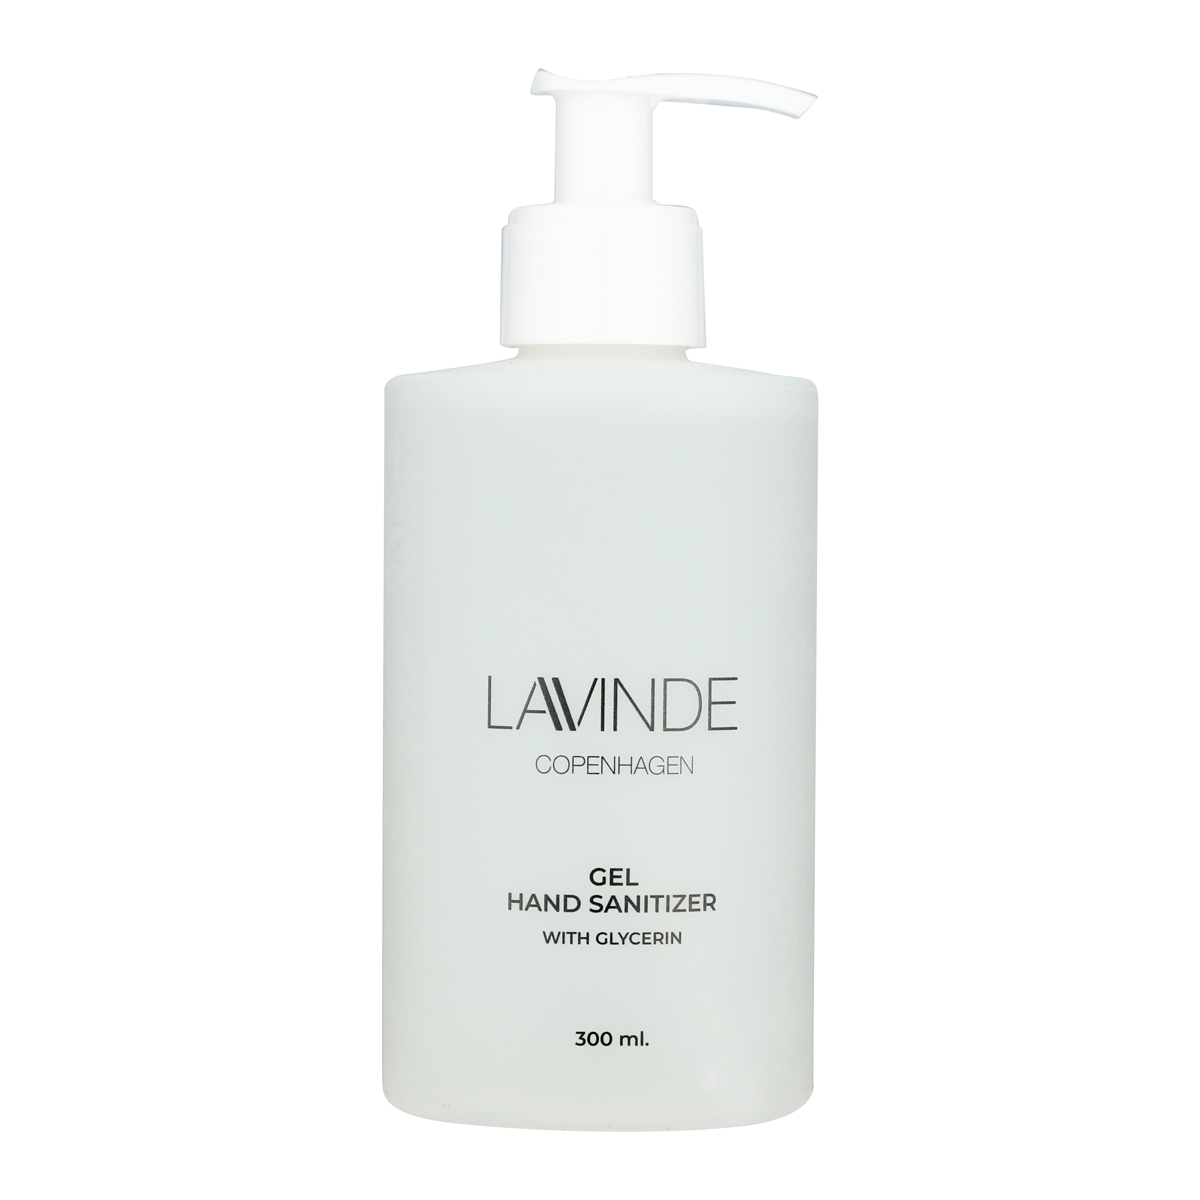 Lavinde Copenhagen - Hand Sanitizer Gel 300 ml